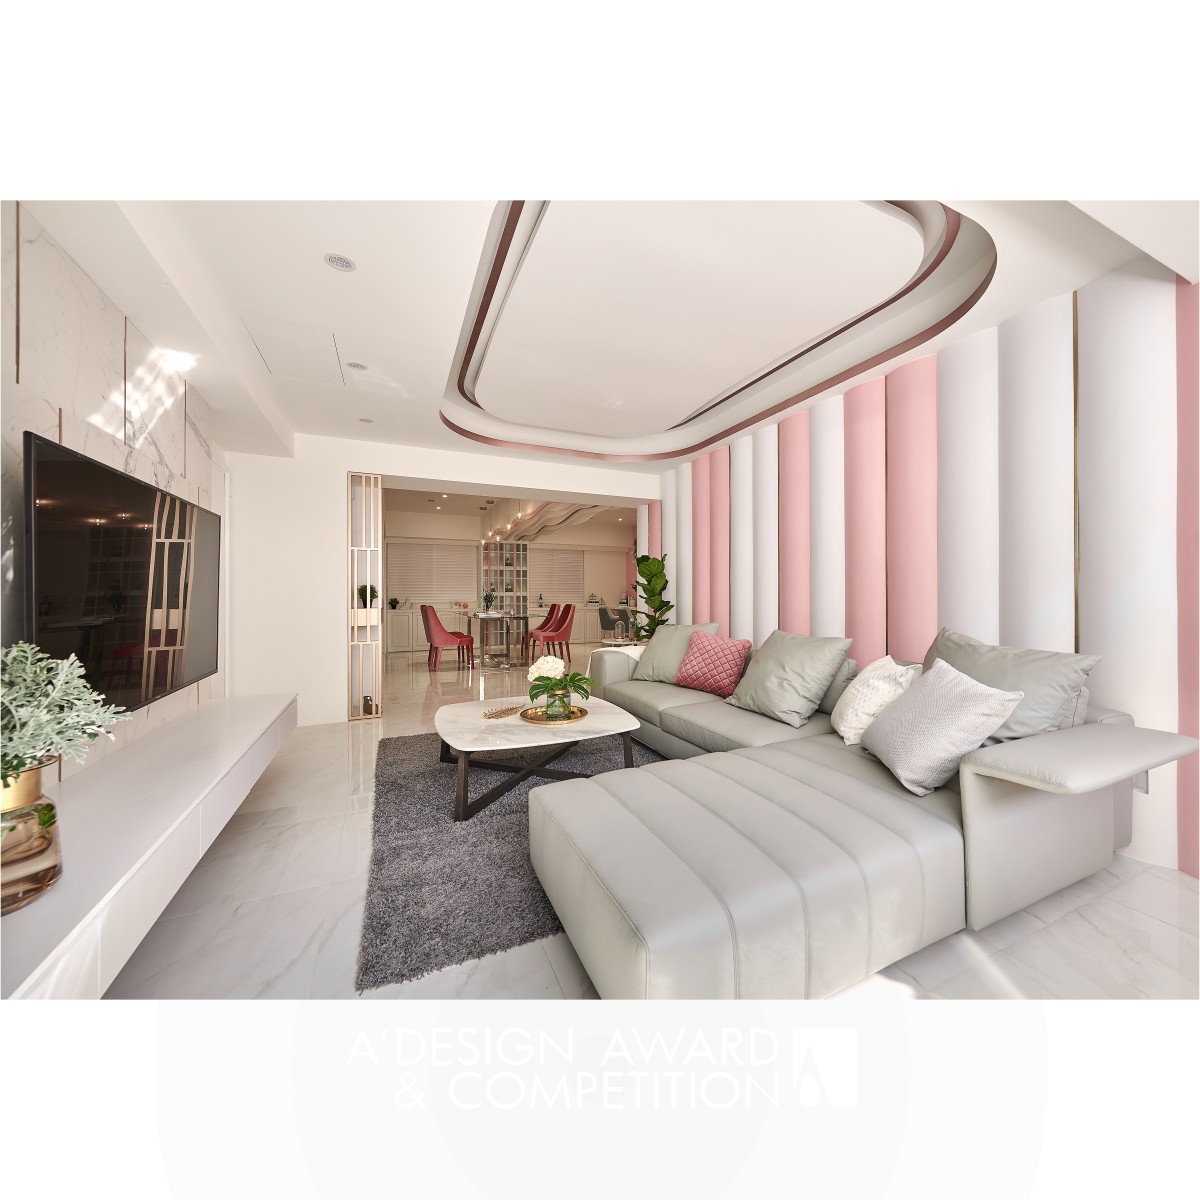 Enchanting Pink Interior Design by Chin-An Yang